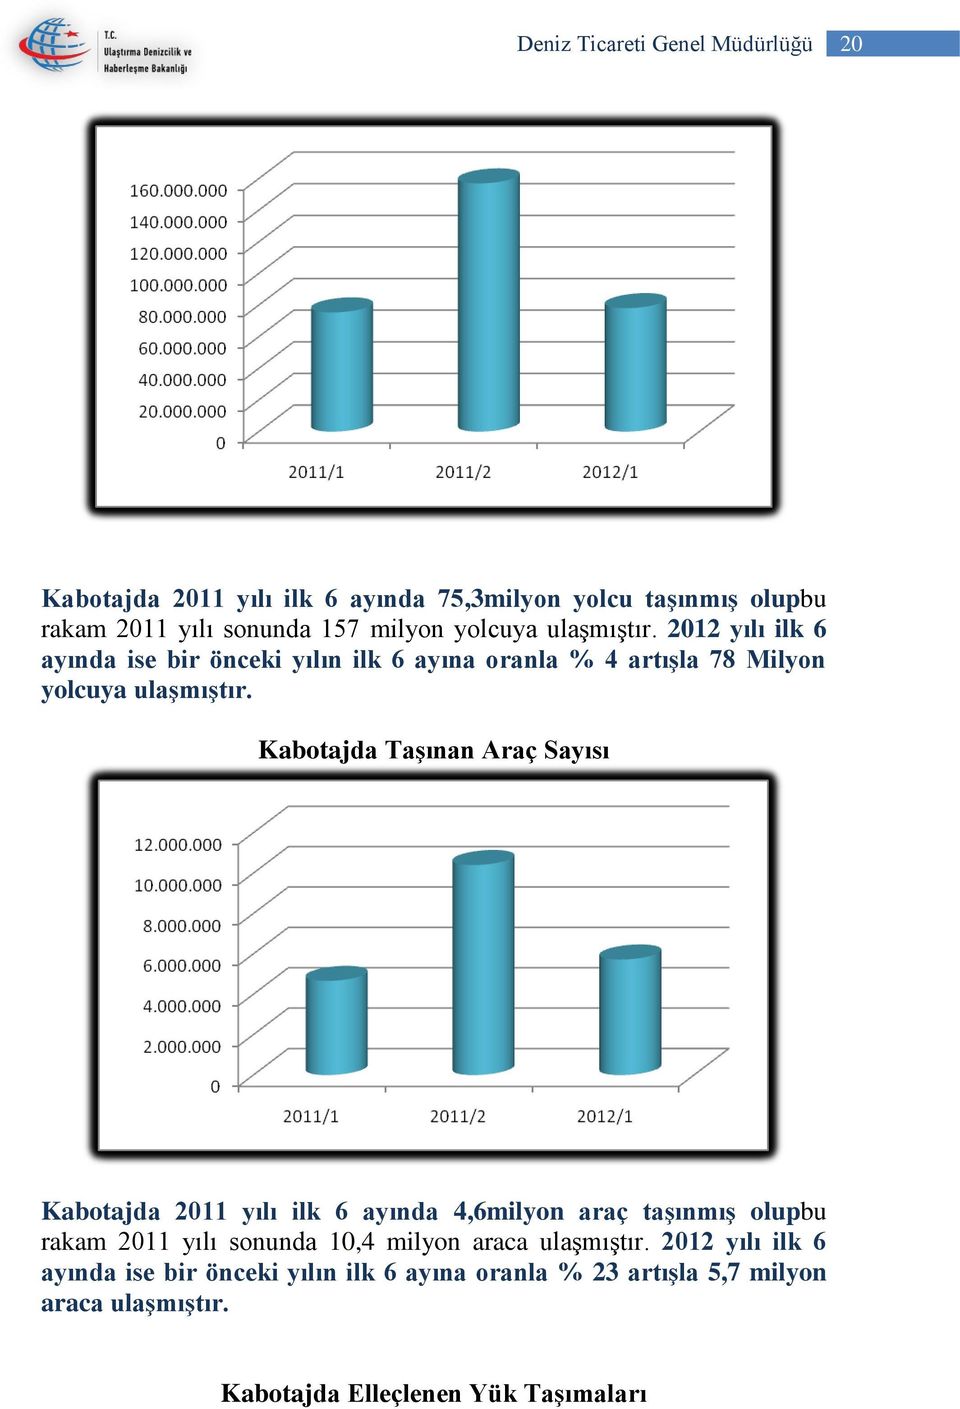 Kabotajda Taşınan Araç Sayısı Kabotajda 2011 yılı ilk 6 ayında 4,6milyon araç taşınmış olupbu rakam 2011 yılı sonunda 10,4 milyon